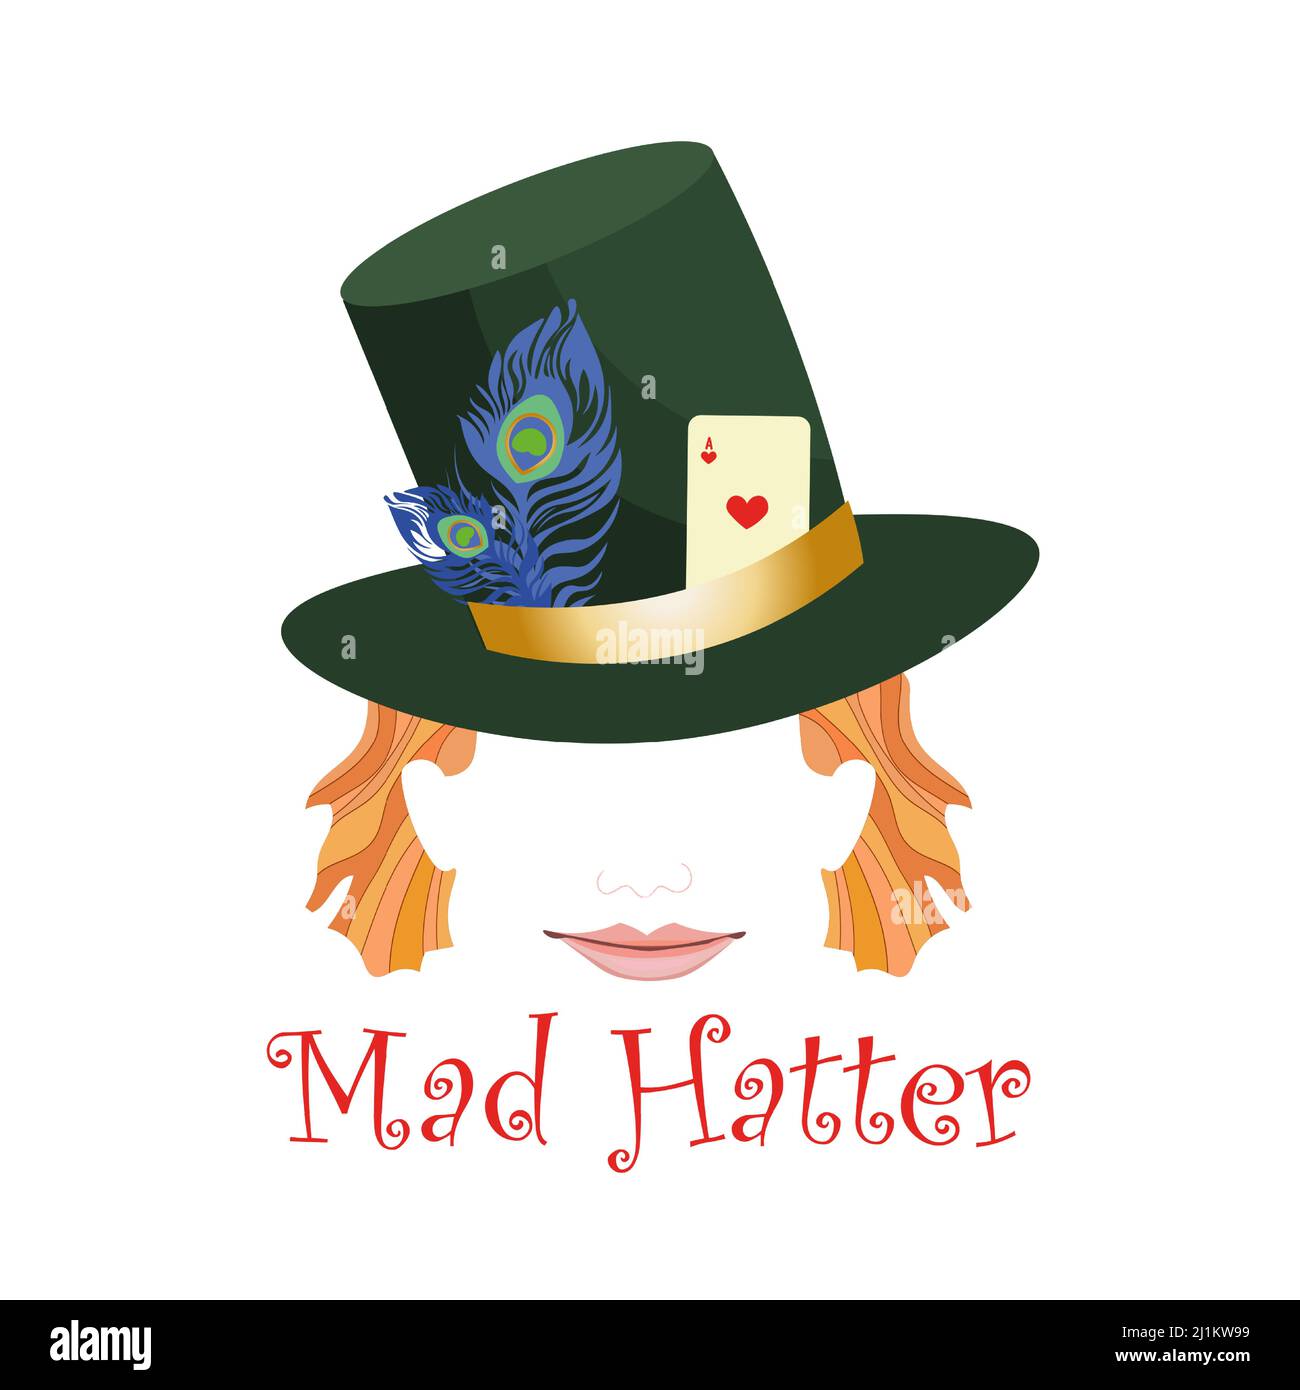 Abstrakter, verrückter Hutkopf mit Hut, verziert mit Spielkarte und Federn. Verzagt lächelndes Gesicht. Vektorgrafik. Stock Vektor